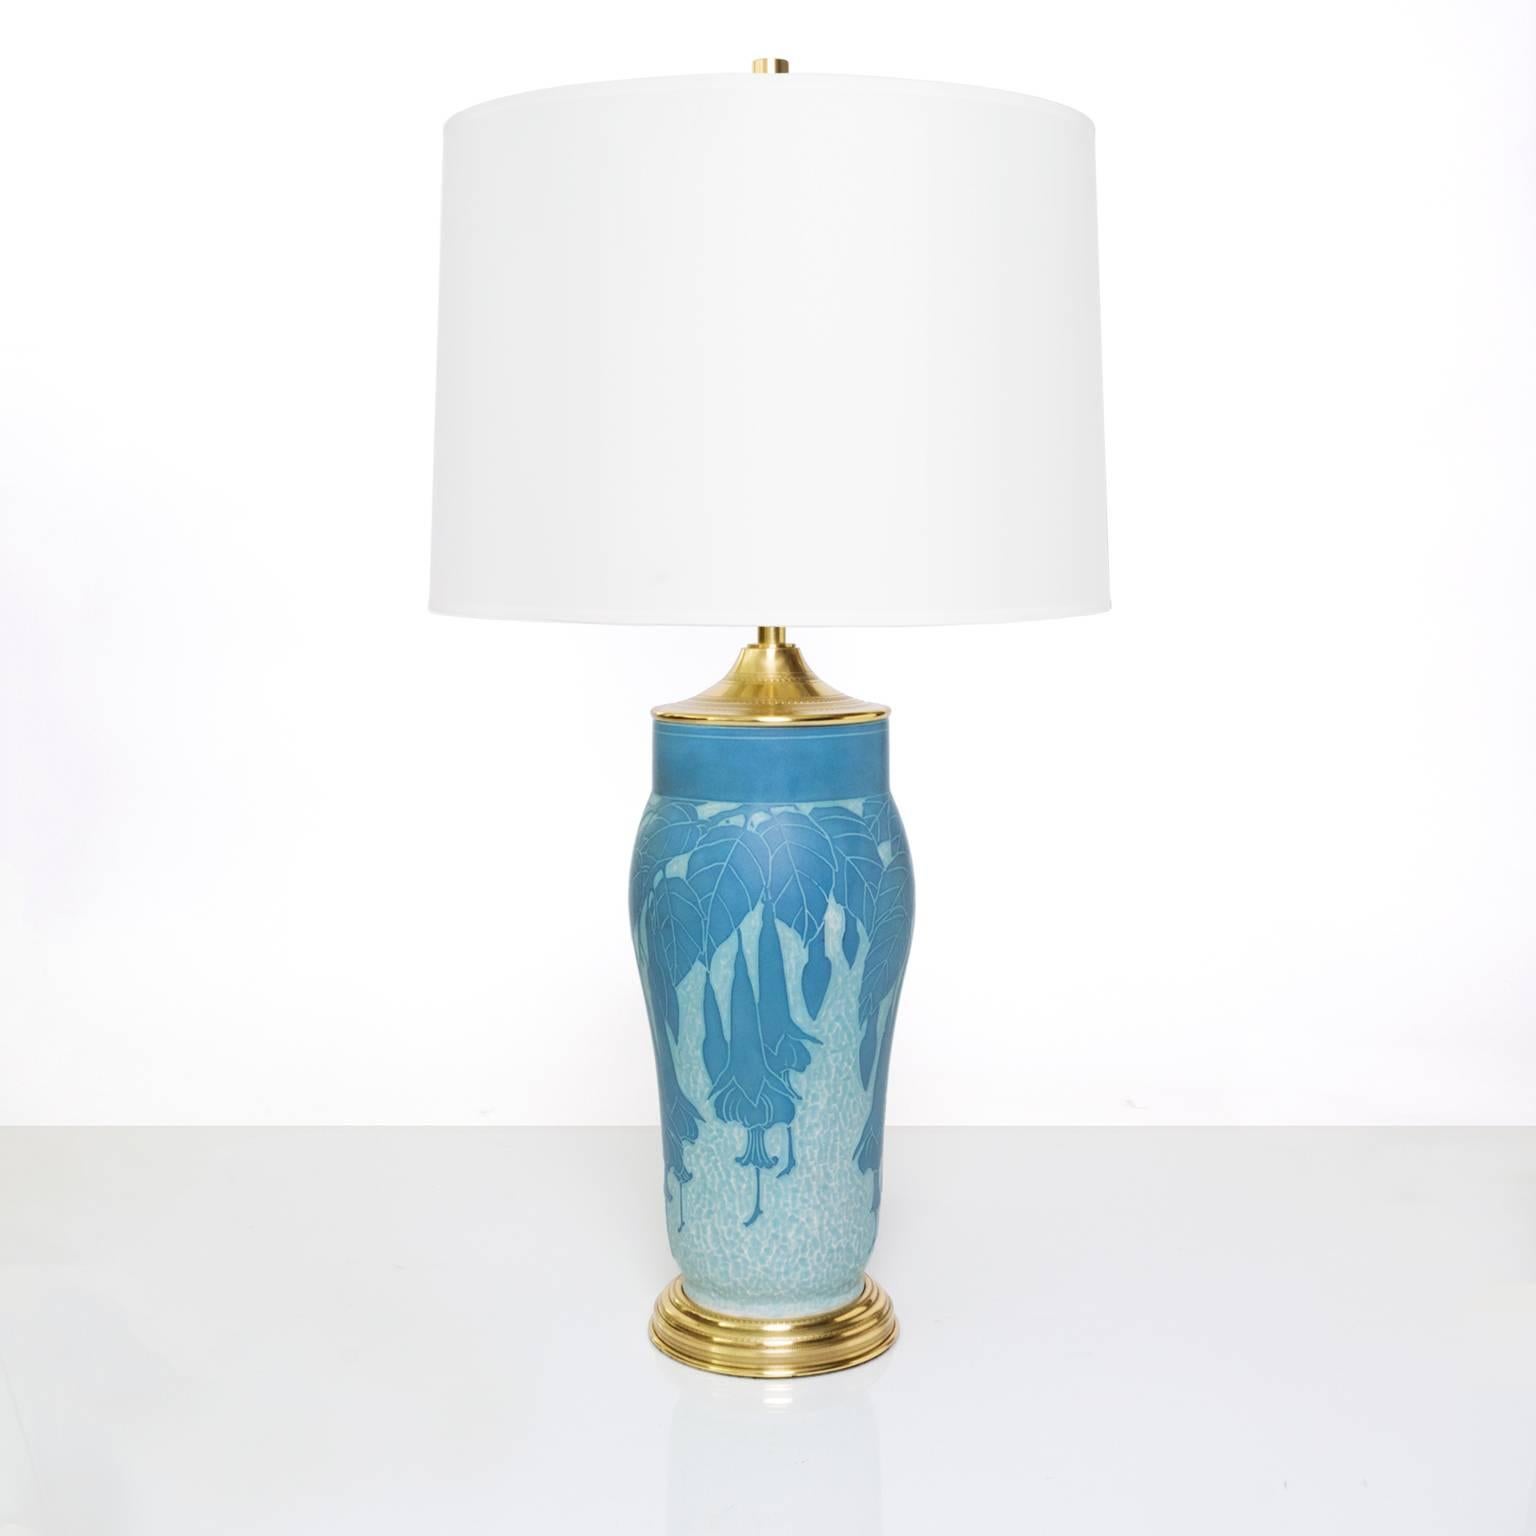 Lampe de table Art Déco de style moderne scandinave et suédois, réalisée en céramique selon la technique du 